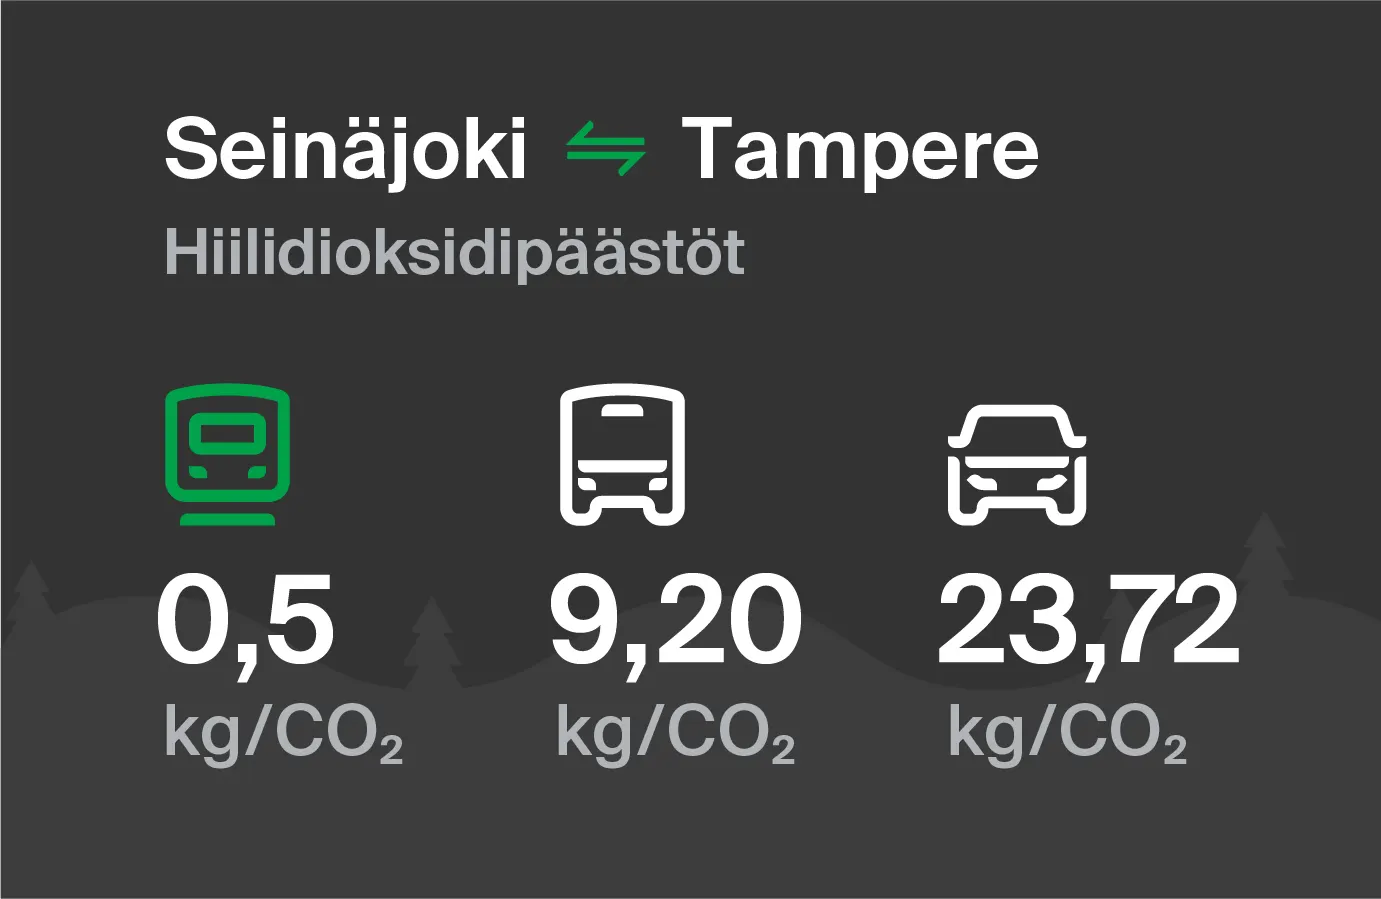 Hiilidioksidipäästöt Seinäjoelta Tampereelle eri kulkuvälinemuodoilla: junalla 0,5 kg/CO2, bussilla 9,20 kg/CO2 ja autolla 23,72 kg/CO2.